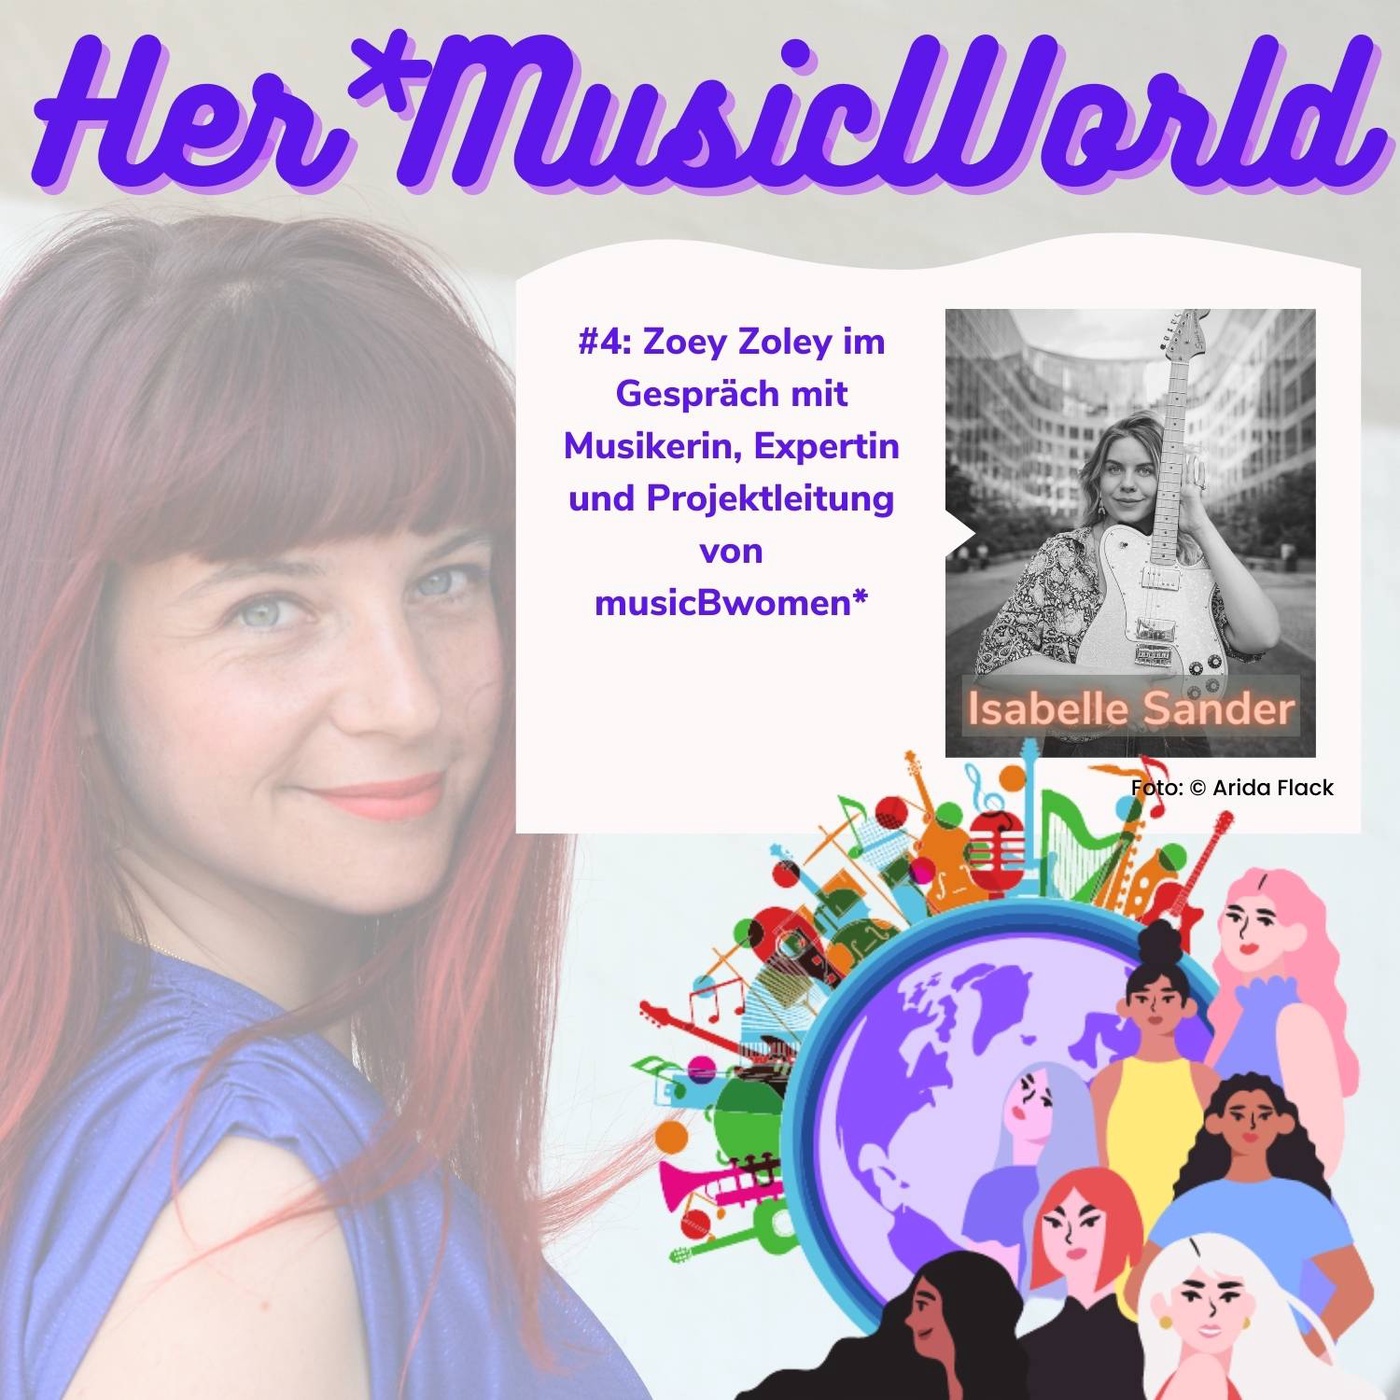 #4 HerMusicWorld Podcast mit Gästin Isa Sander